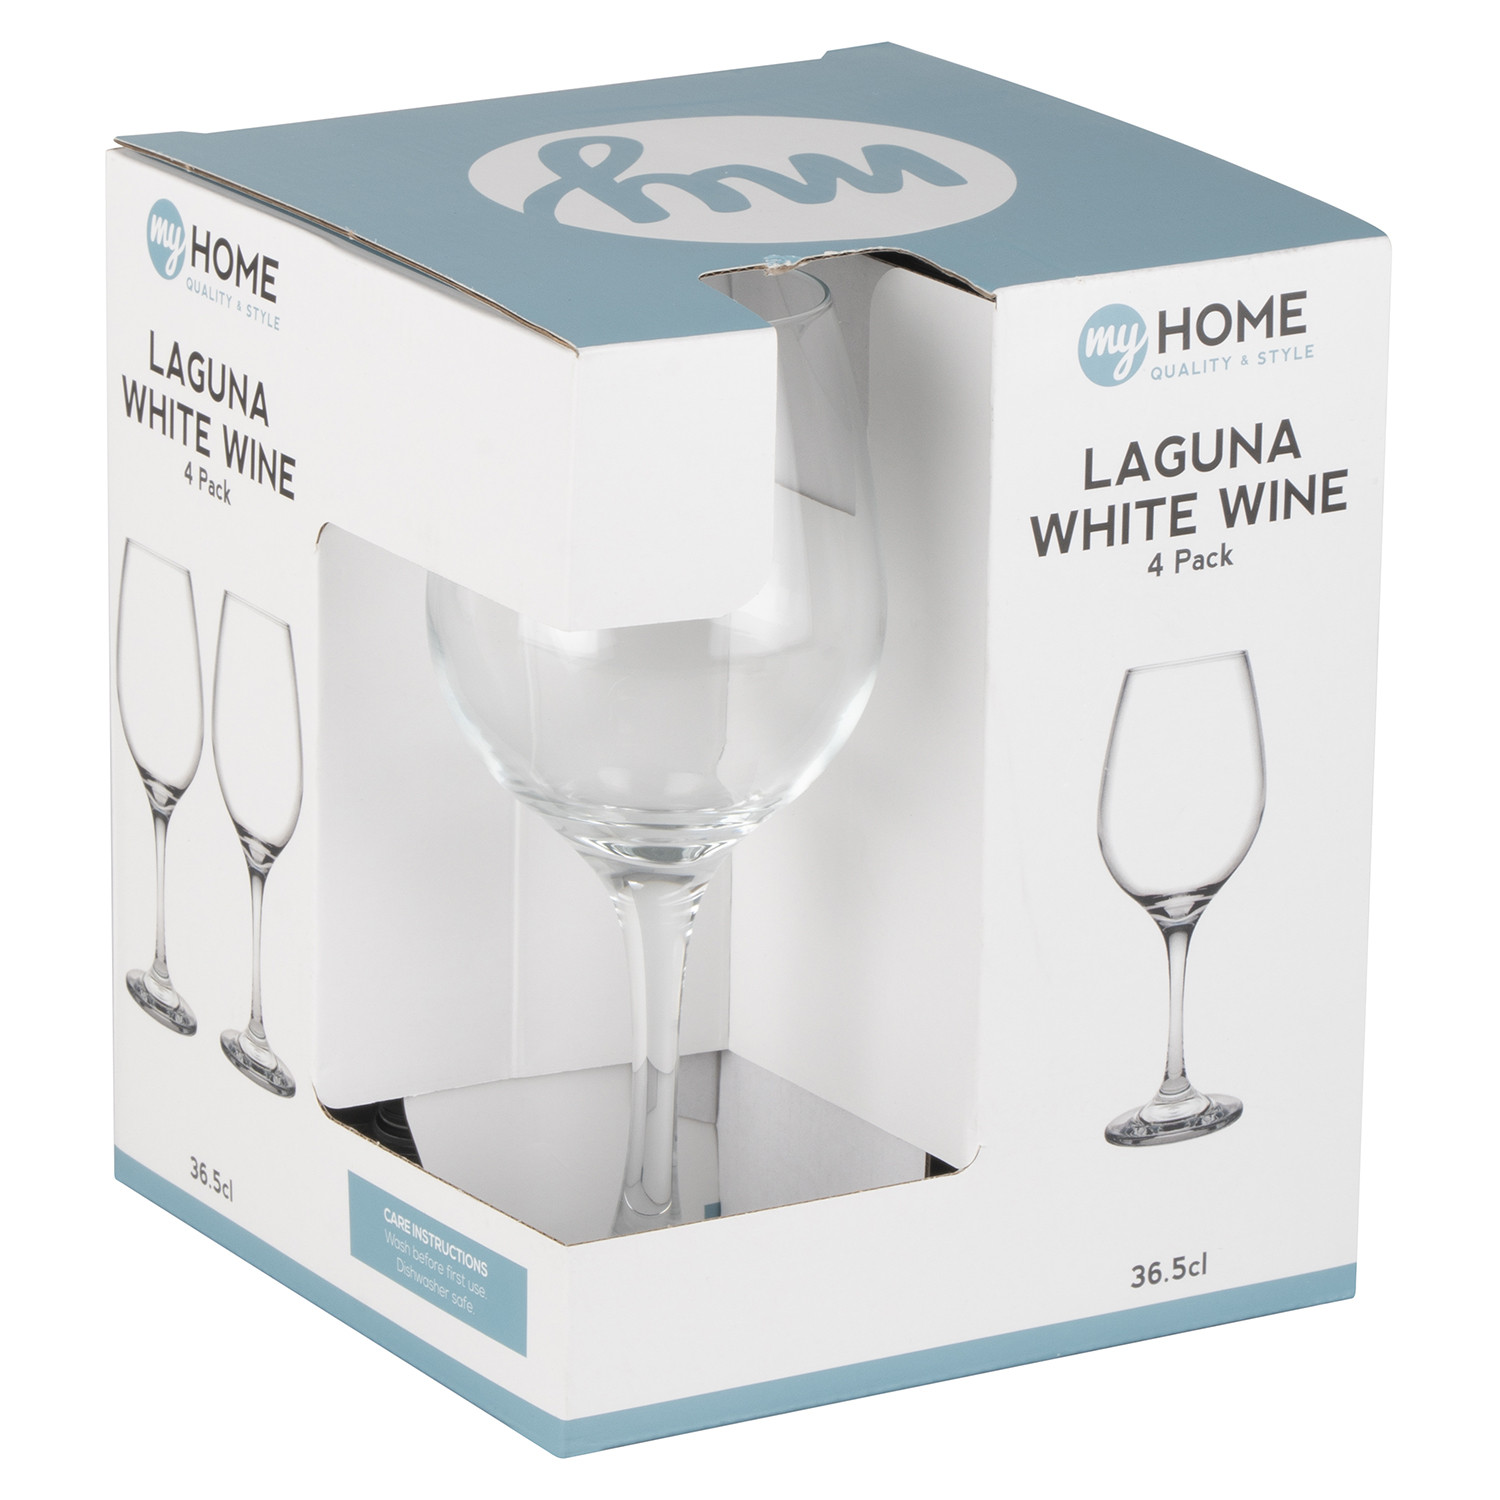 My Home Laguna White Wine Glass 4 Pack Image 3